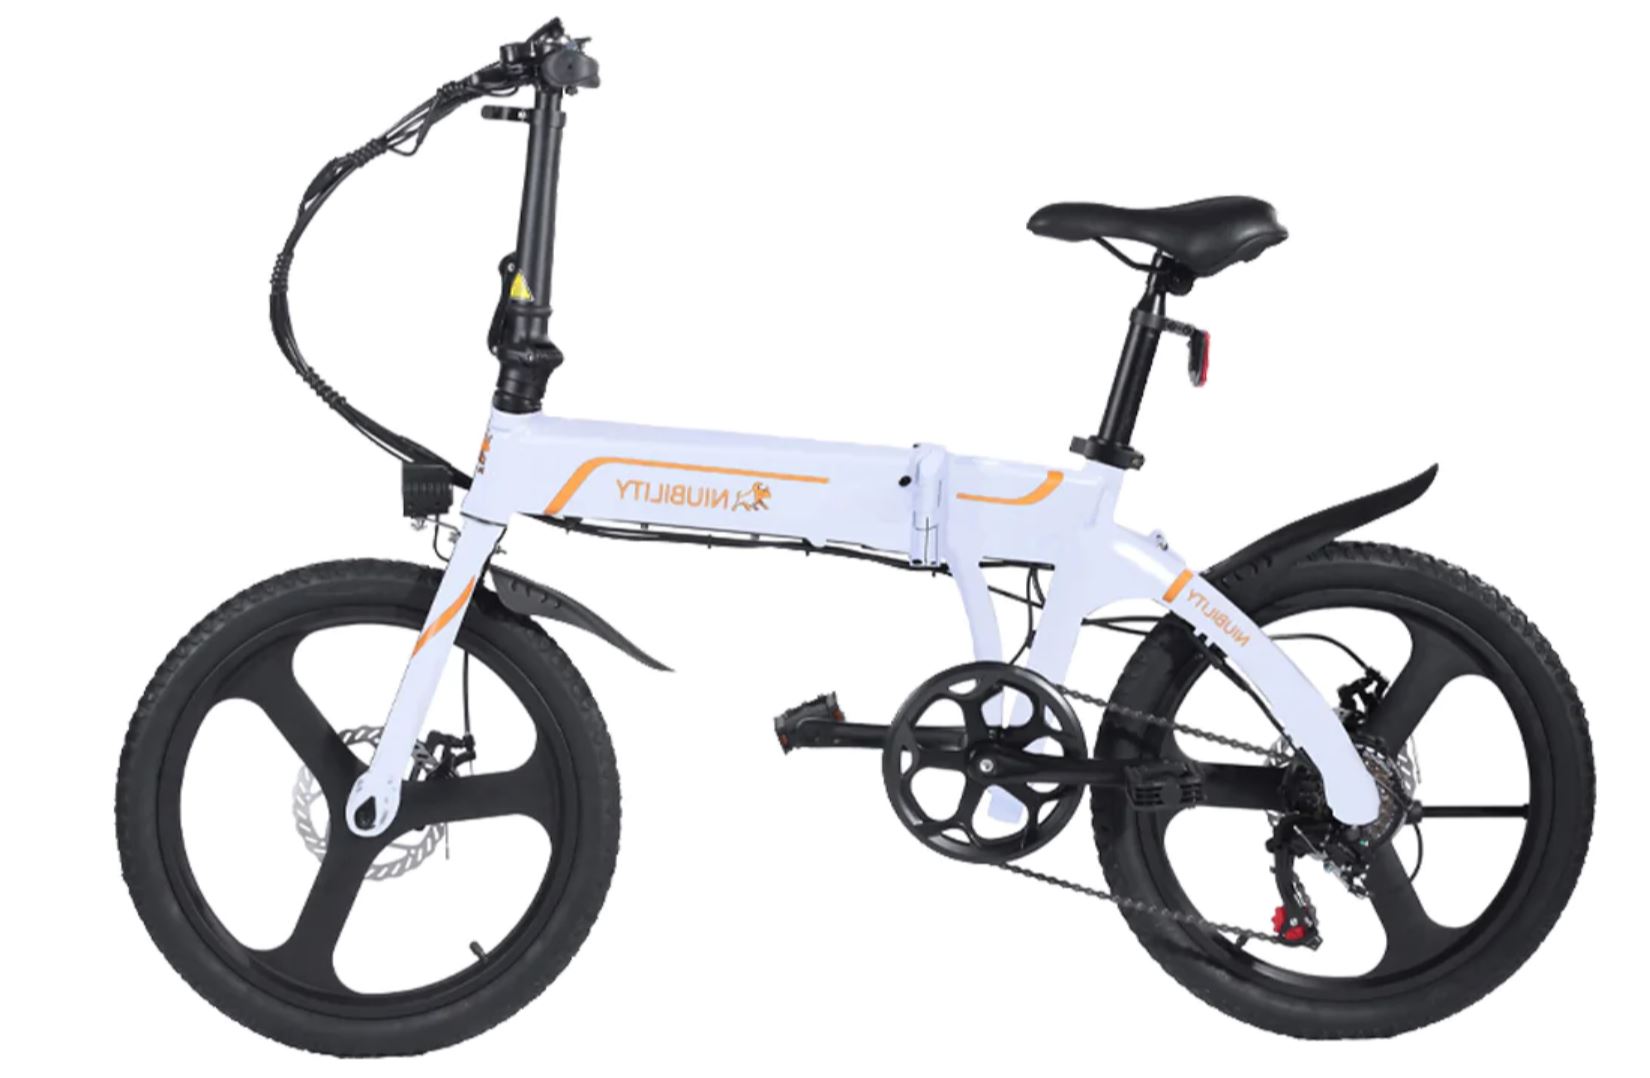 Niubility B20 - mały rower elektryczny w dobrej cenie - biała wersja